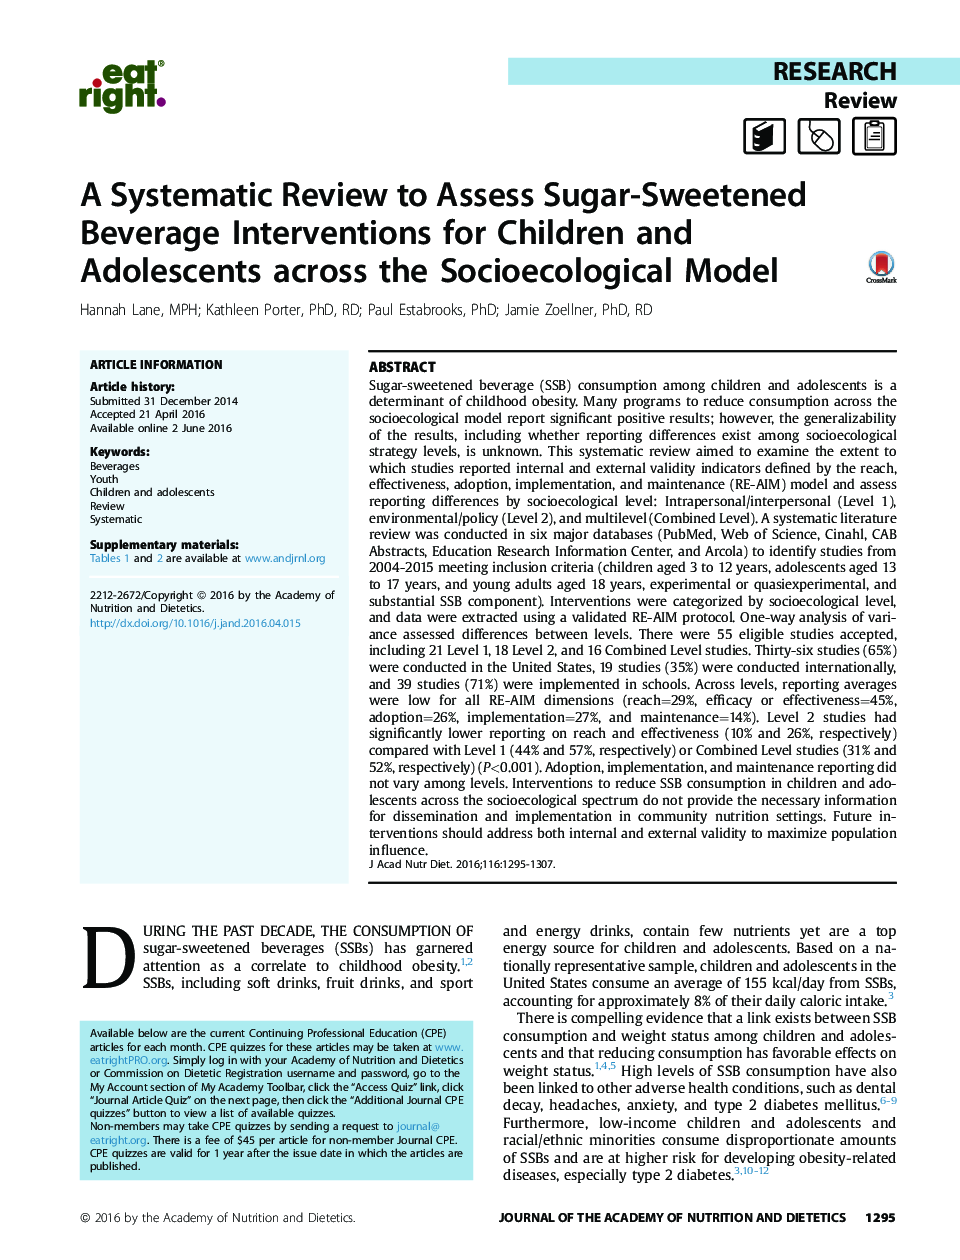 یک مرور سیستماتیک برای ارزیابی مداخلات نوشیدنی شکر شیرین برای کودکان و نوجوانان در مدل جامعه شناختی 